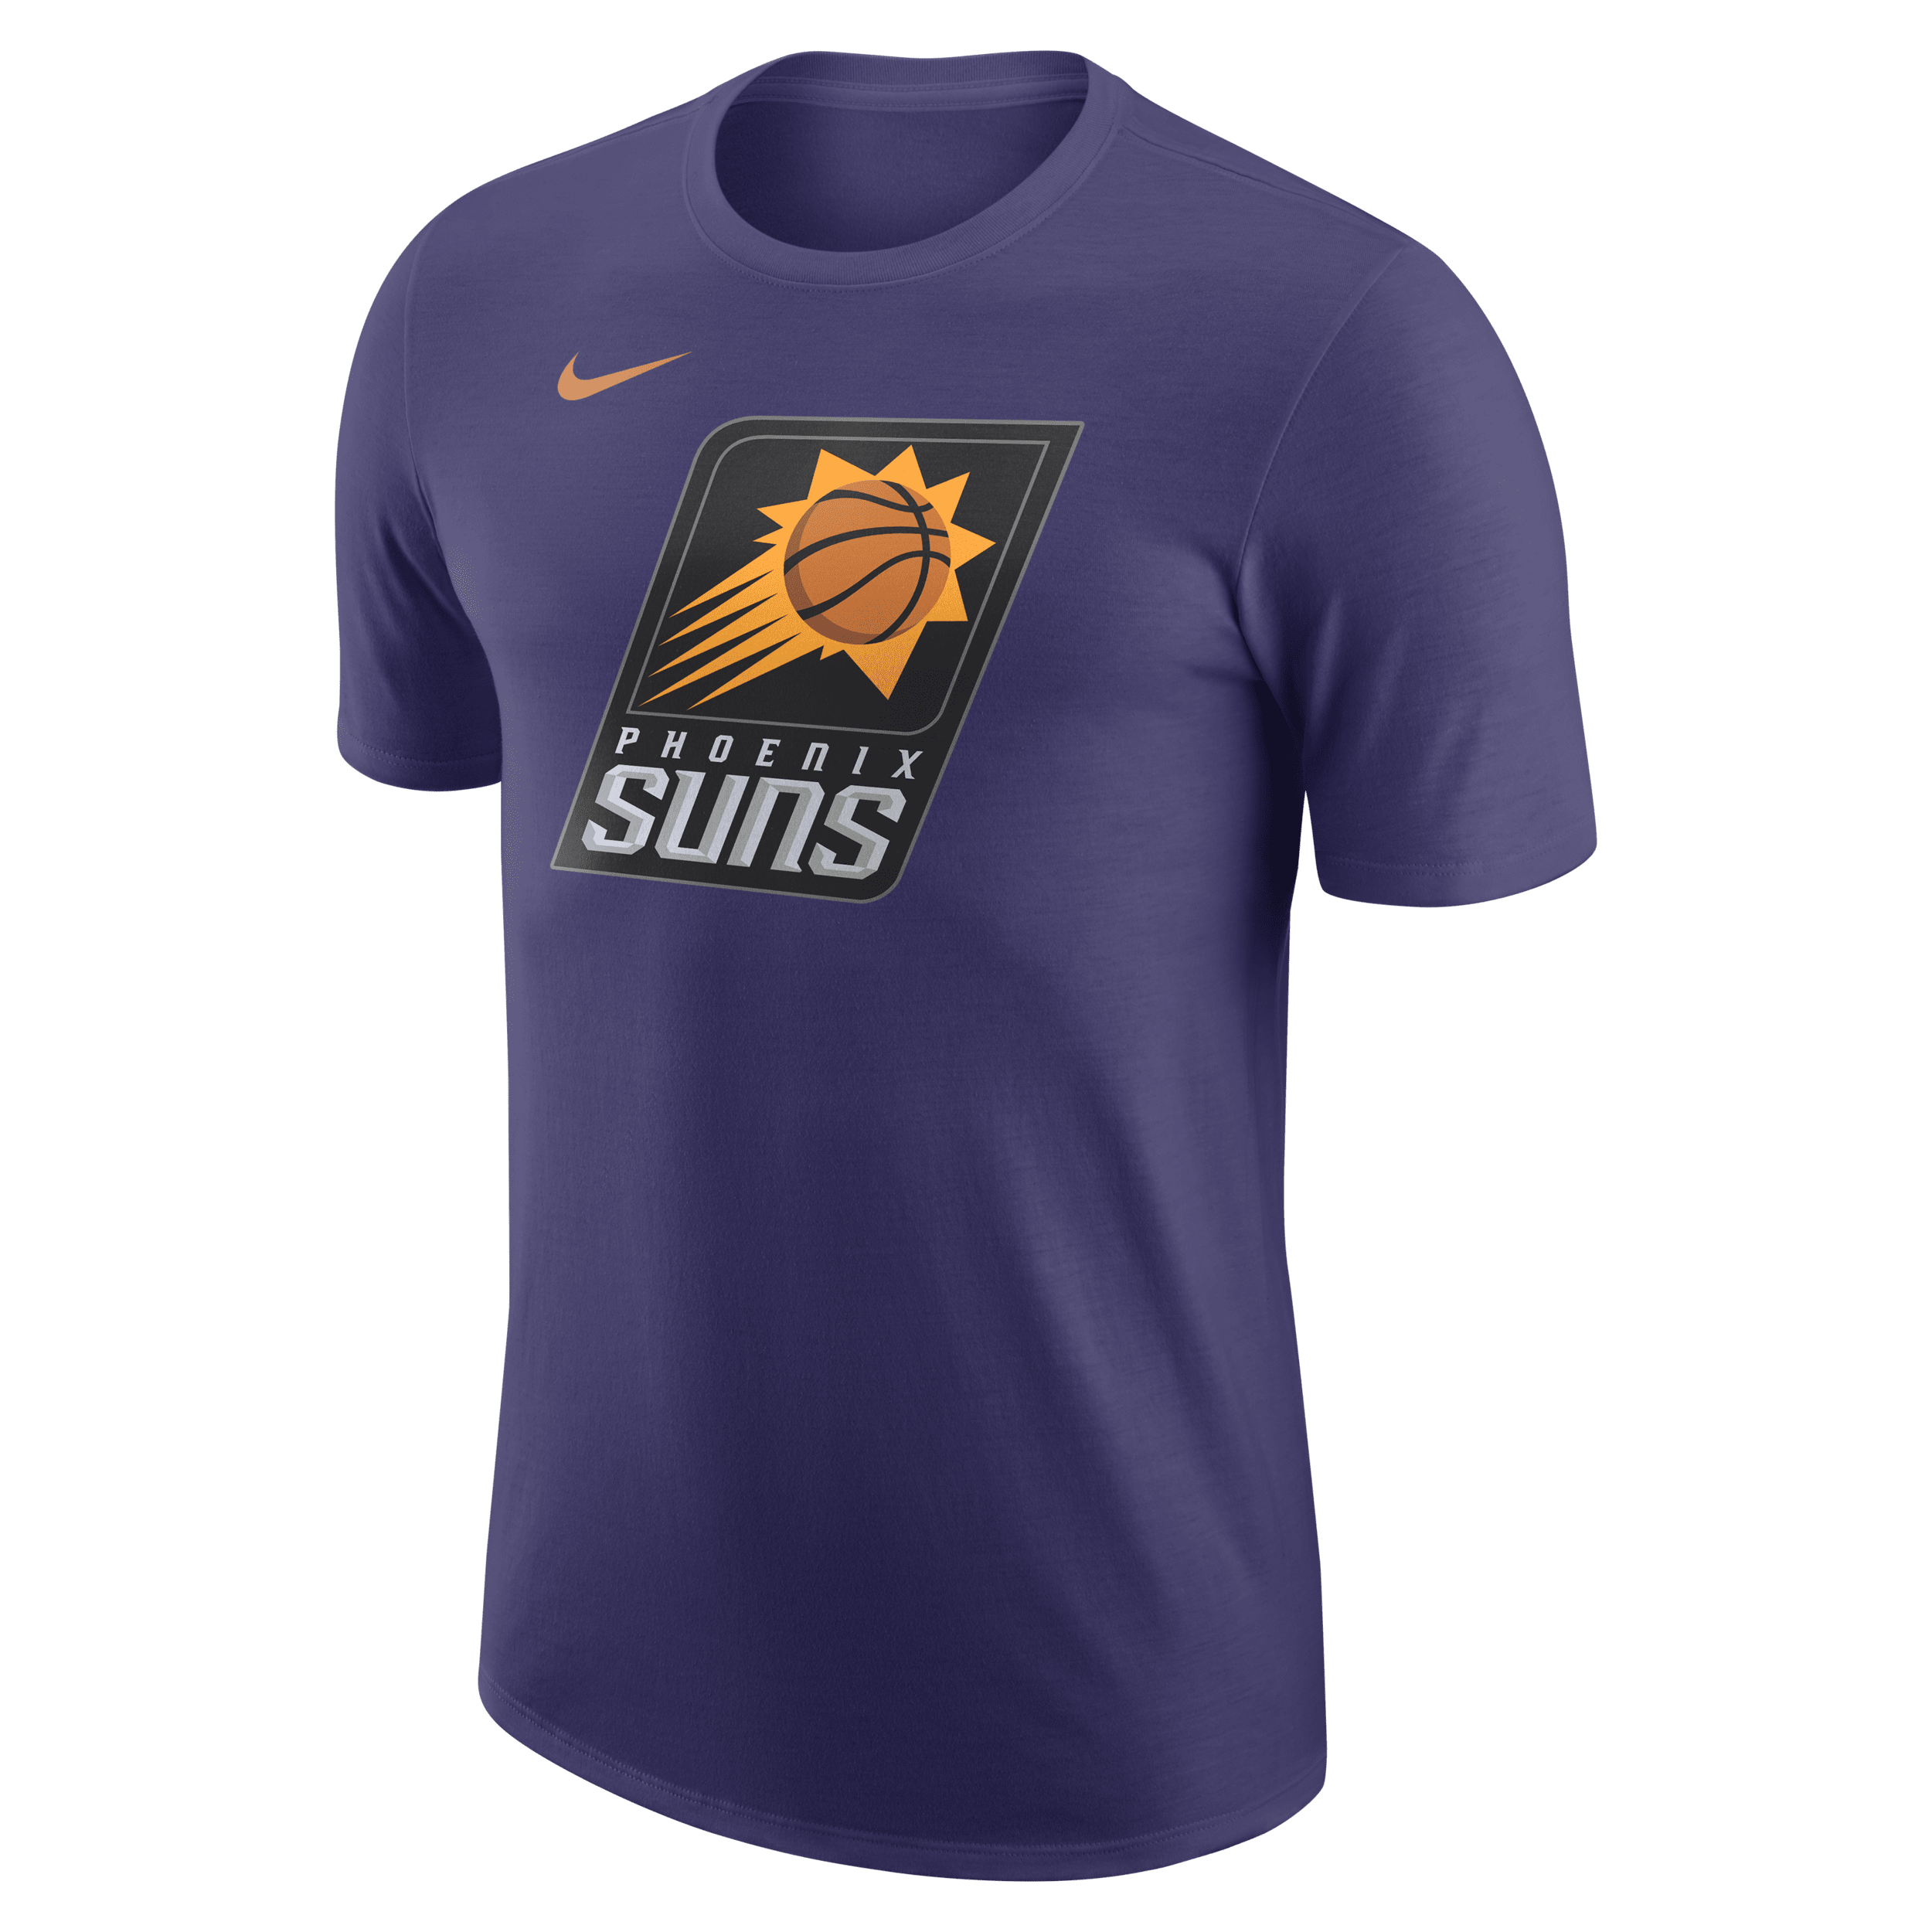 Phoenix Suns Essential Camiseta Nike NBA - Hombre - Morado